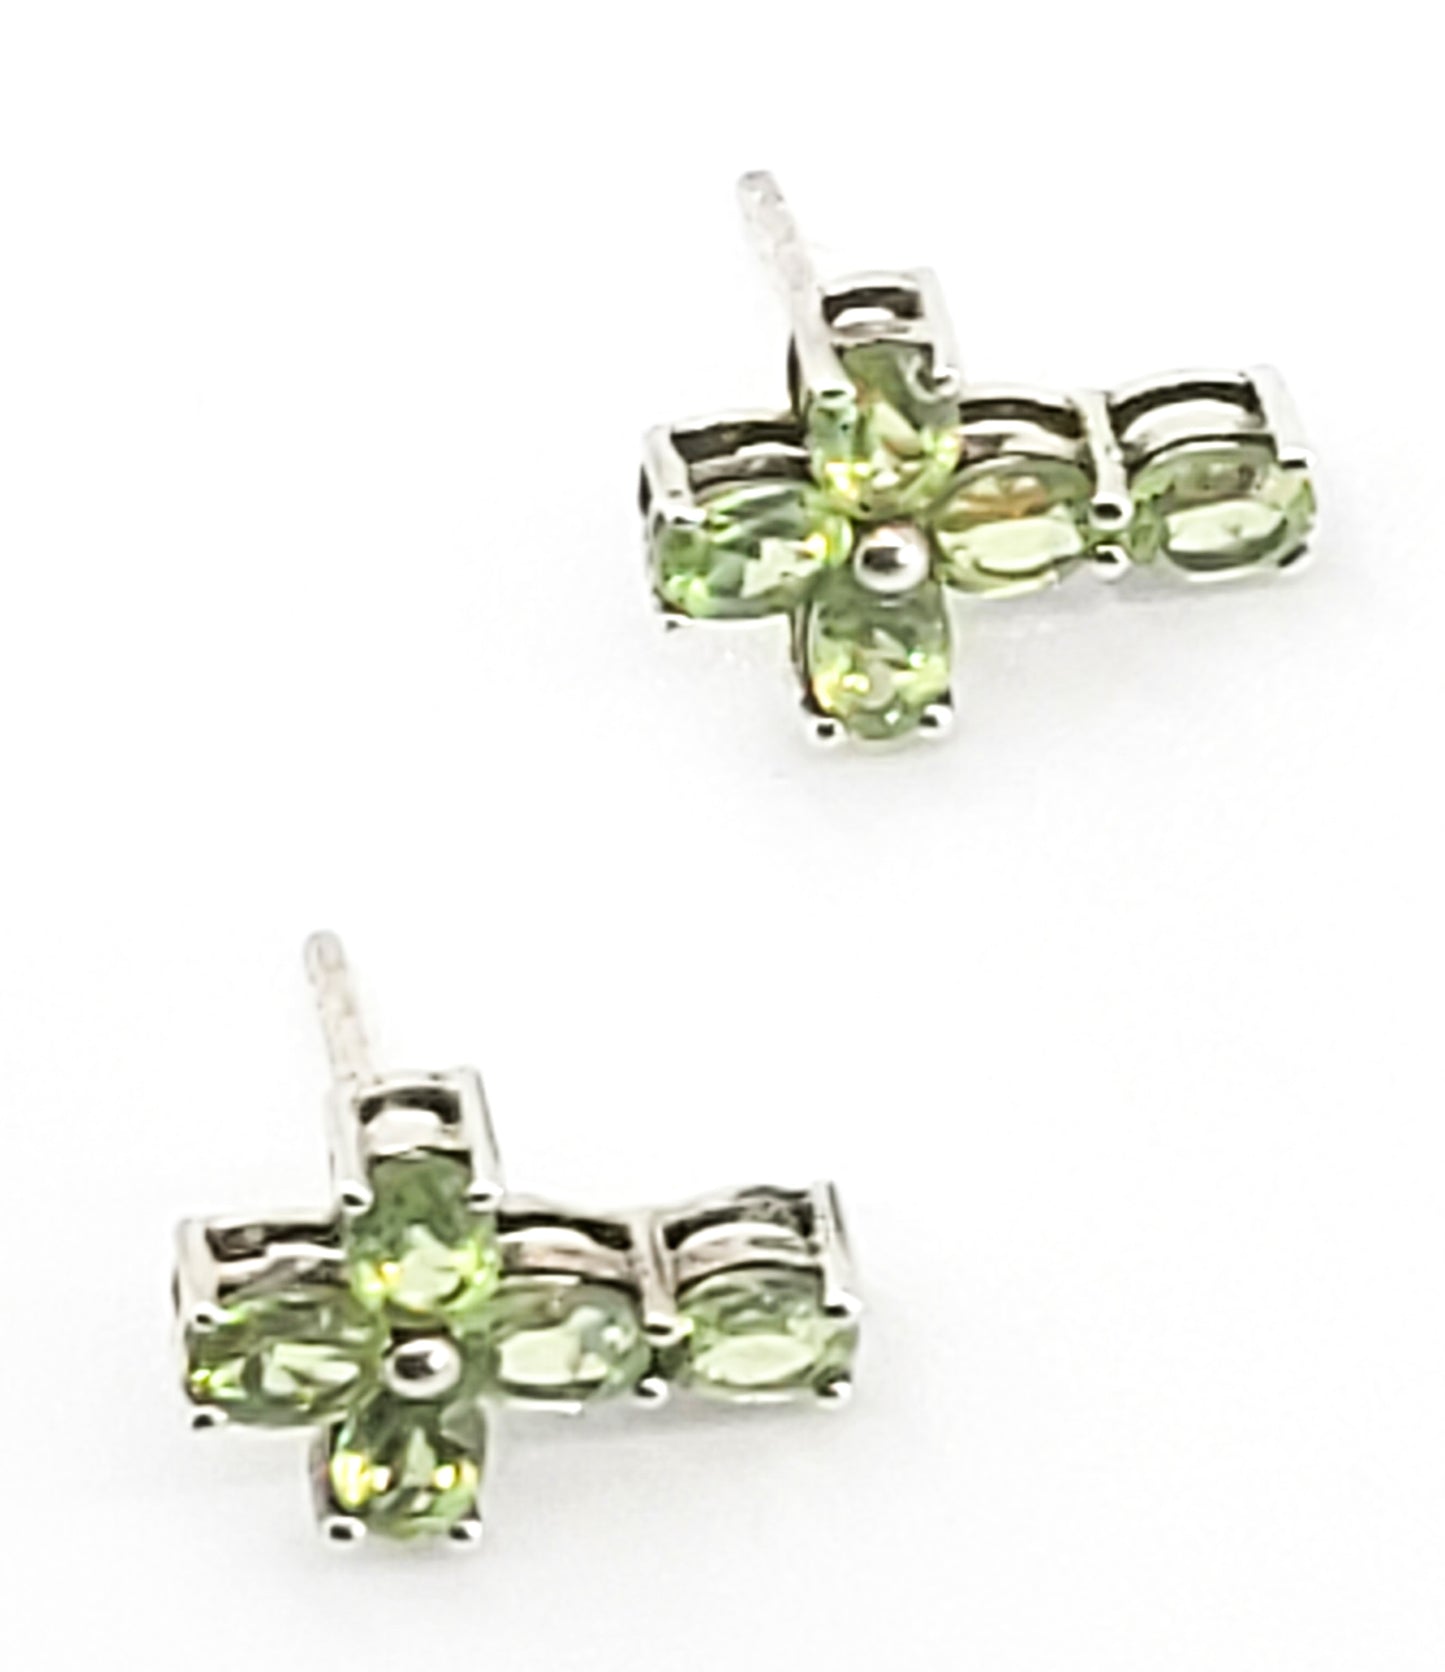 Peridot green gemstone petite cross stud earrings birthstone August